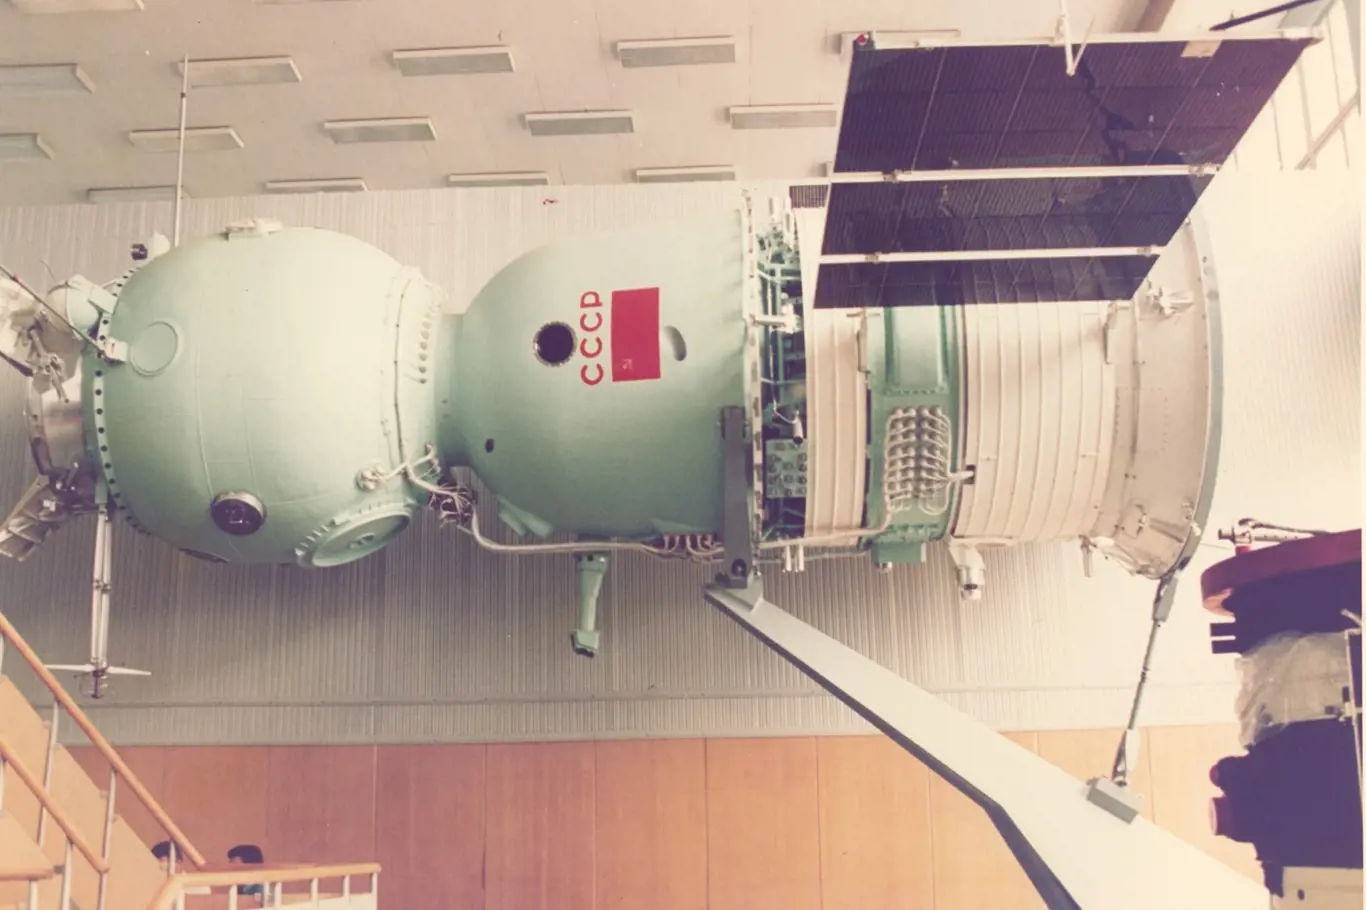 Maketa vesmírné lodi Sojuz ve výcvikovém středisku v Hvězdném městečku nedaleko Moskvy